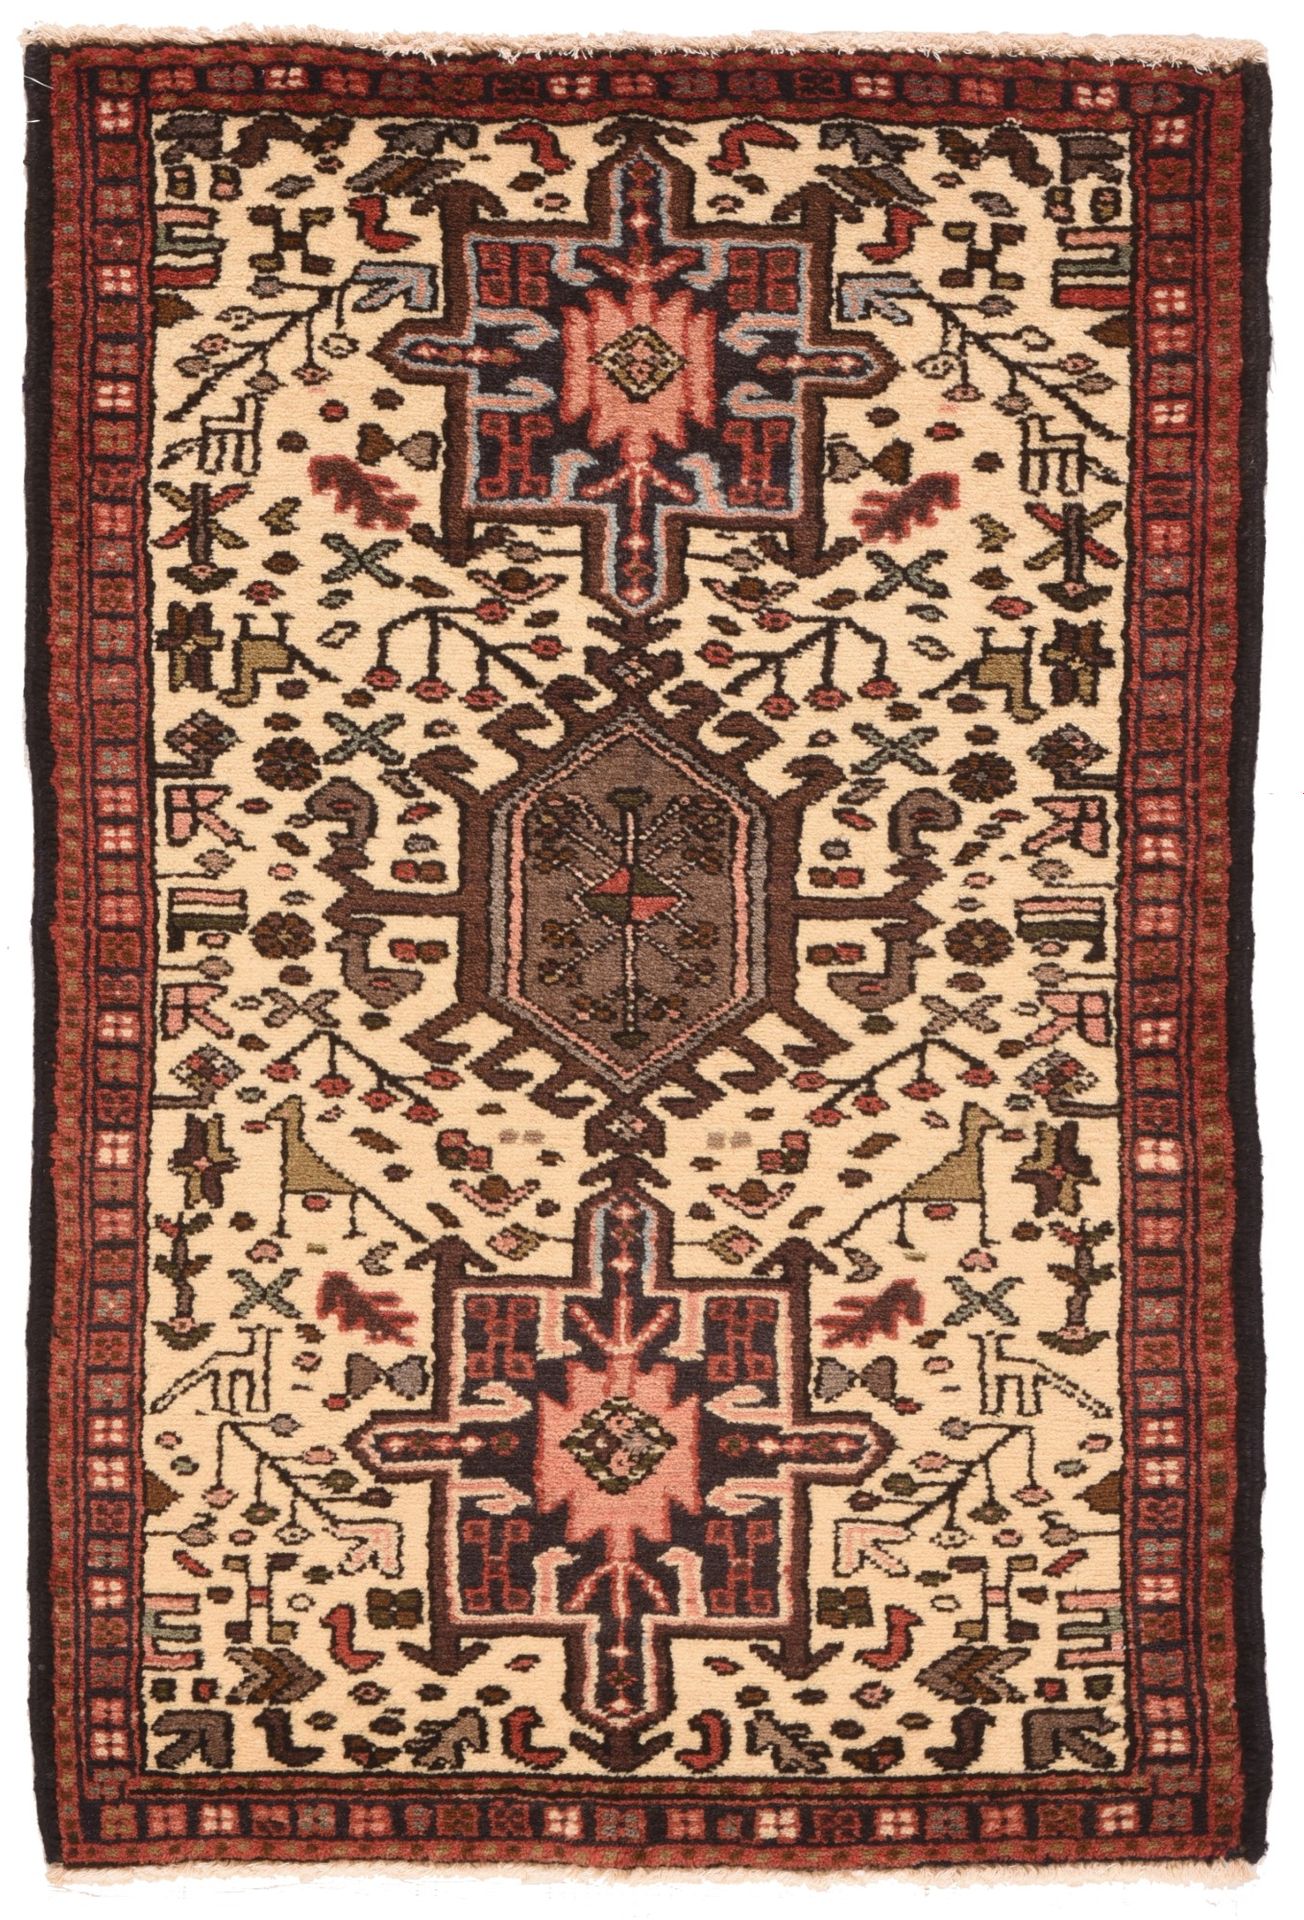 Null 古董卡拉杰地毯，2'2" x 3'7" ( 0.64 x 1.09 M )